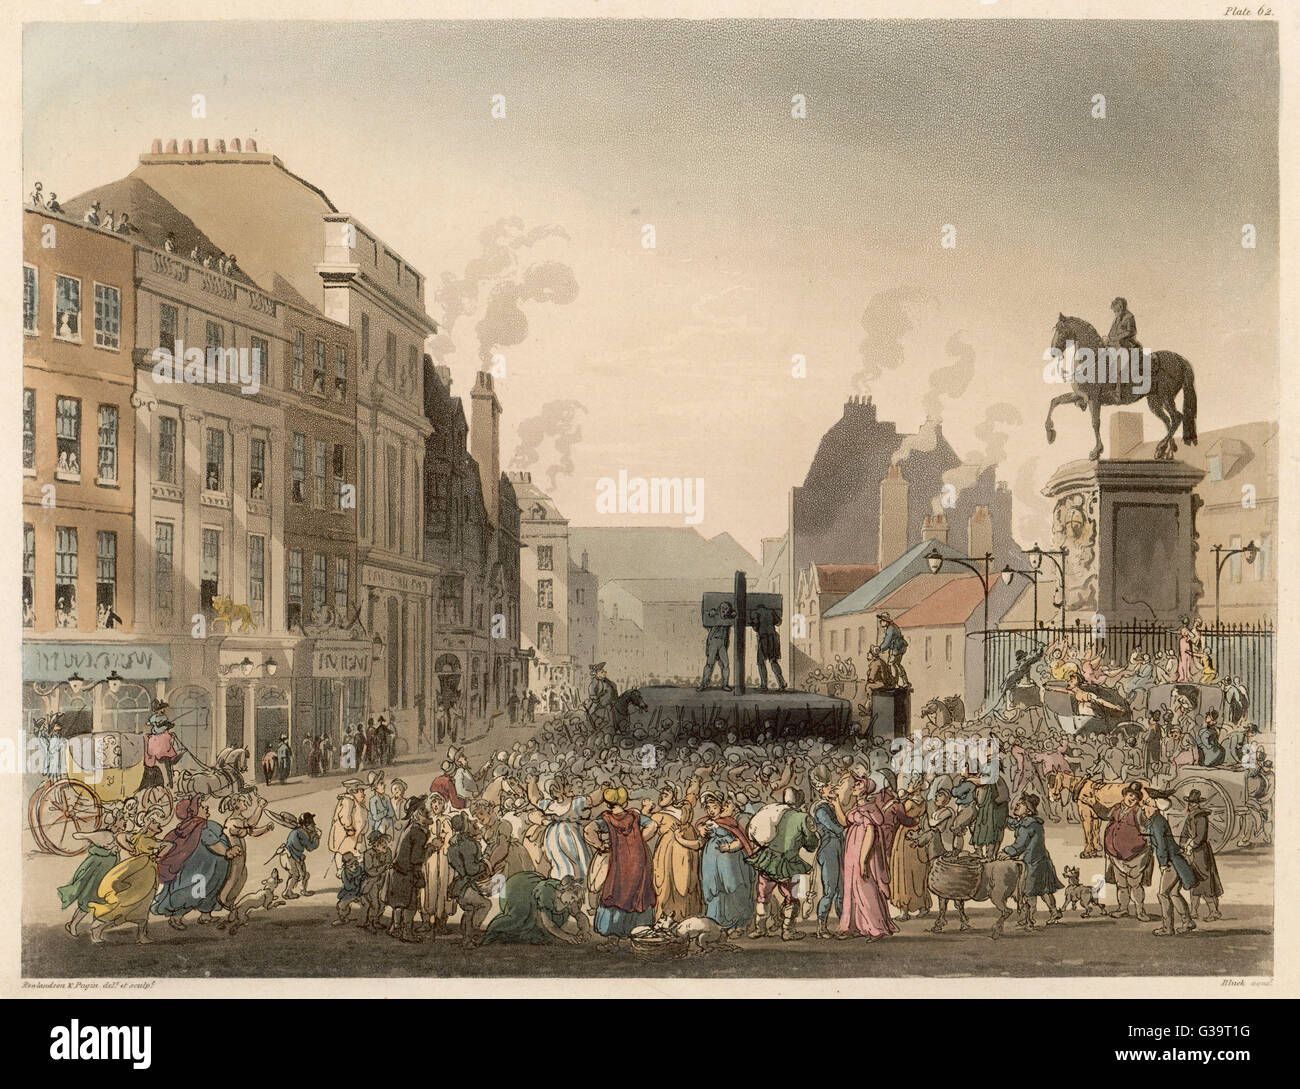 Una multitud se congregó en la picota, Charing Cross. Fecha: 1809 Foto de stock